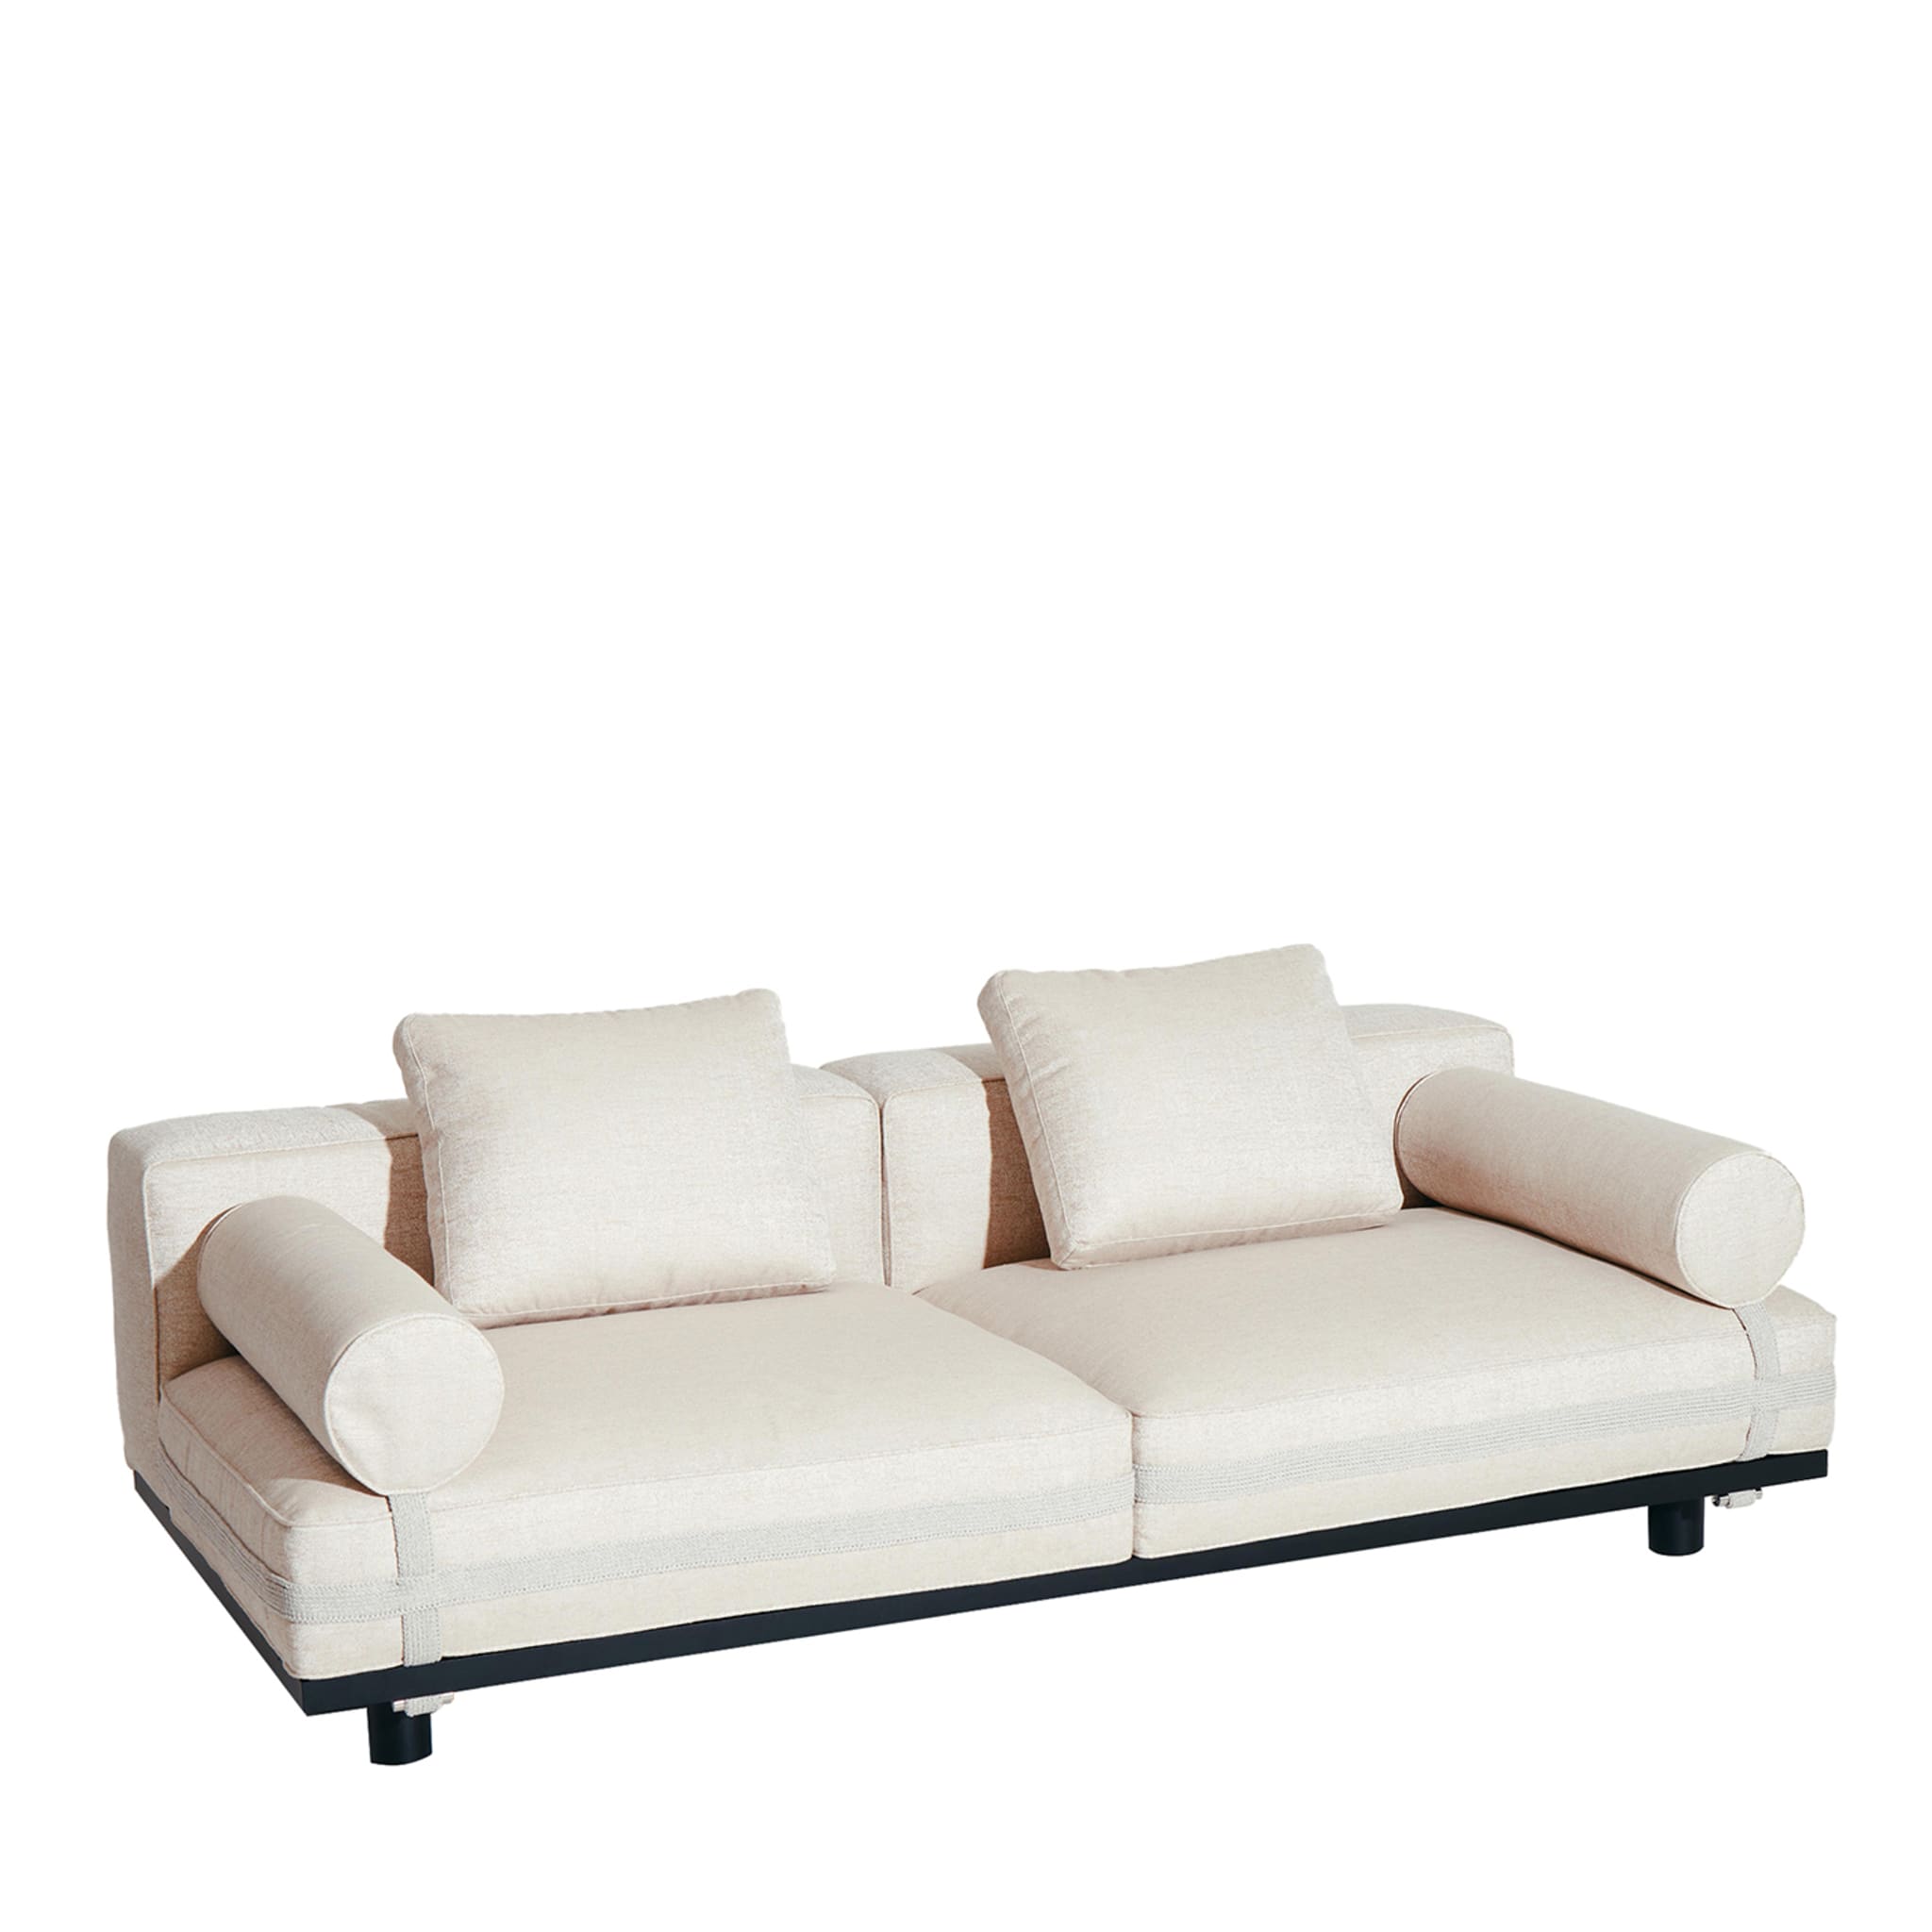 Saint Remy Weißes 2-Sitzer Sofa #2 von Luca Nichetto - Hauptansicht